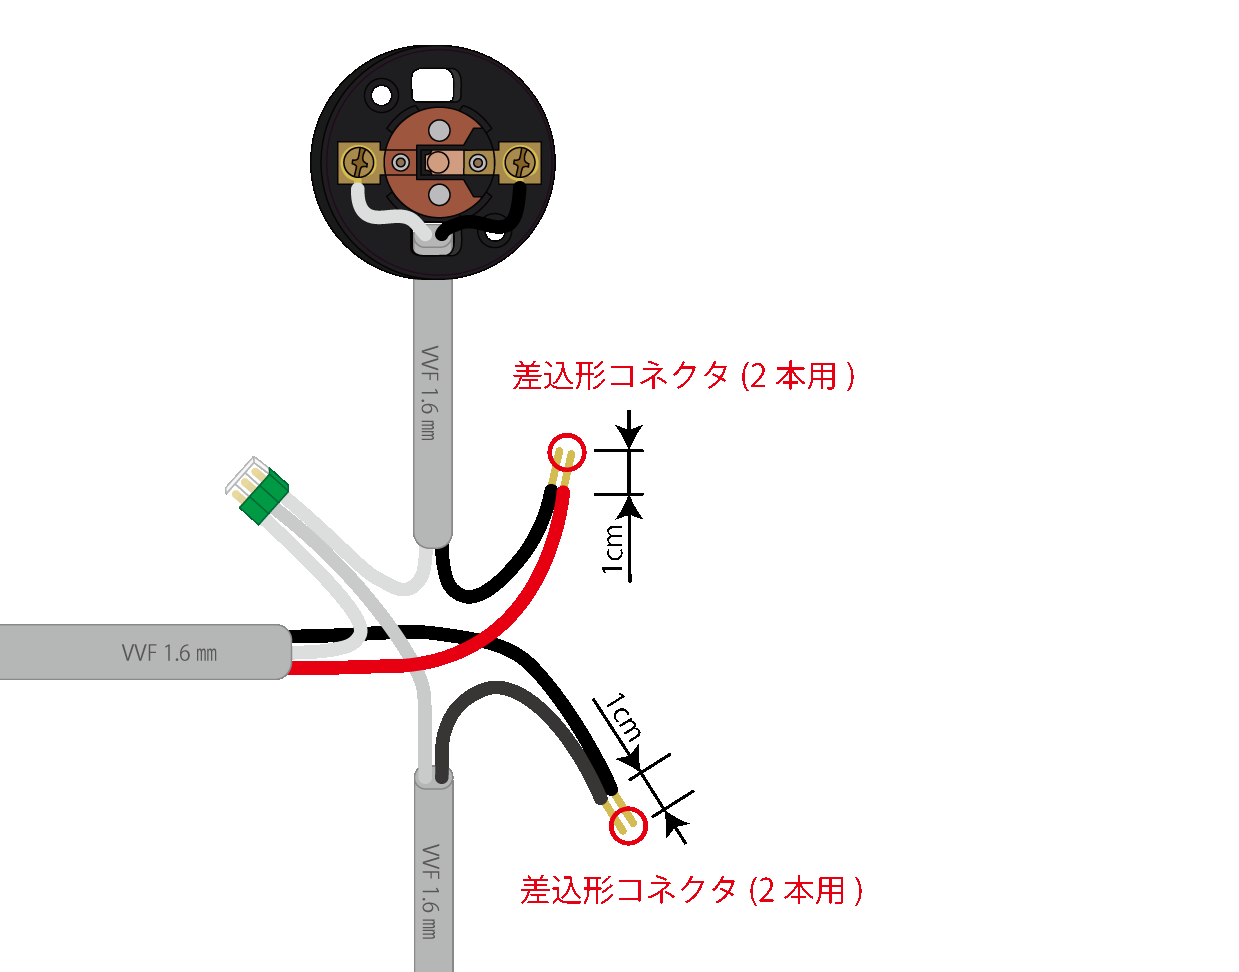 差込形コネクタによる電線相互の接続